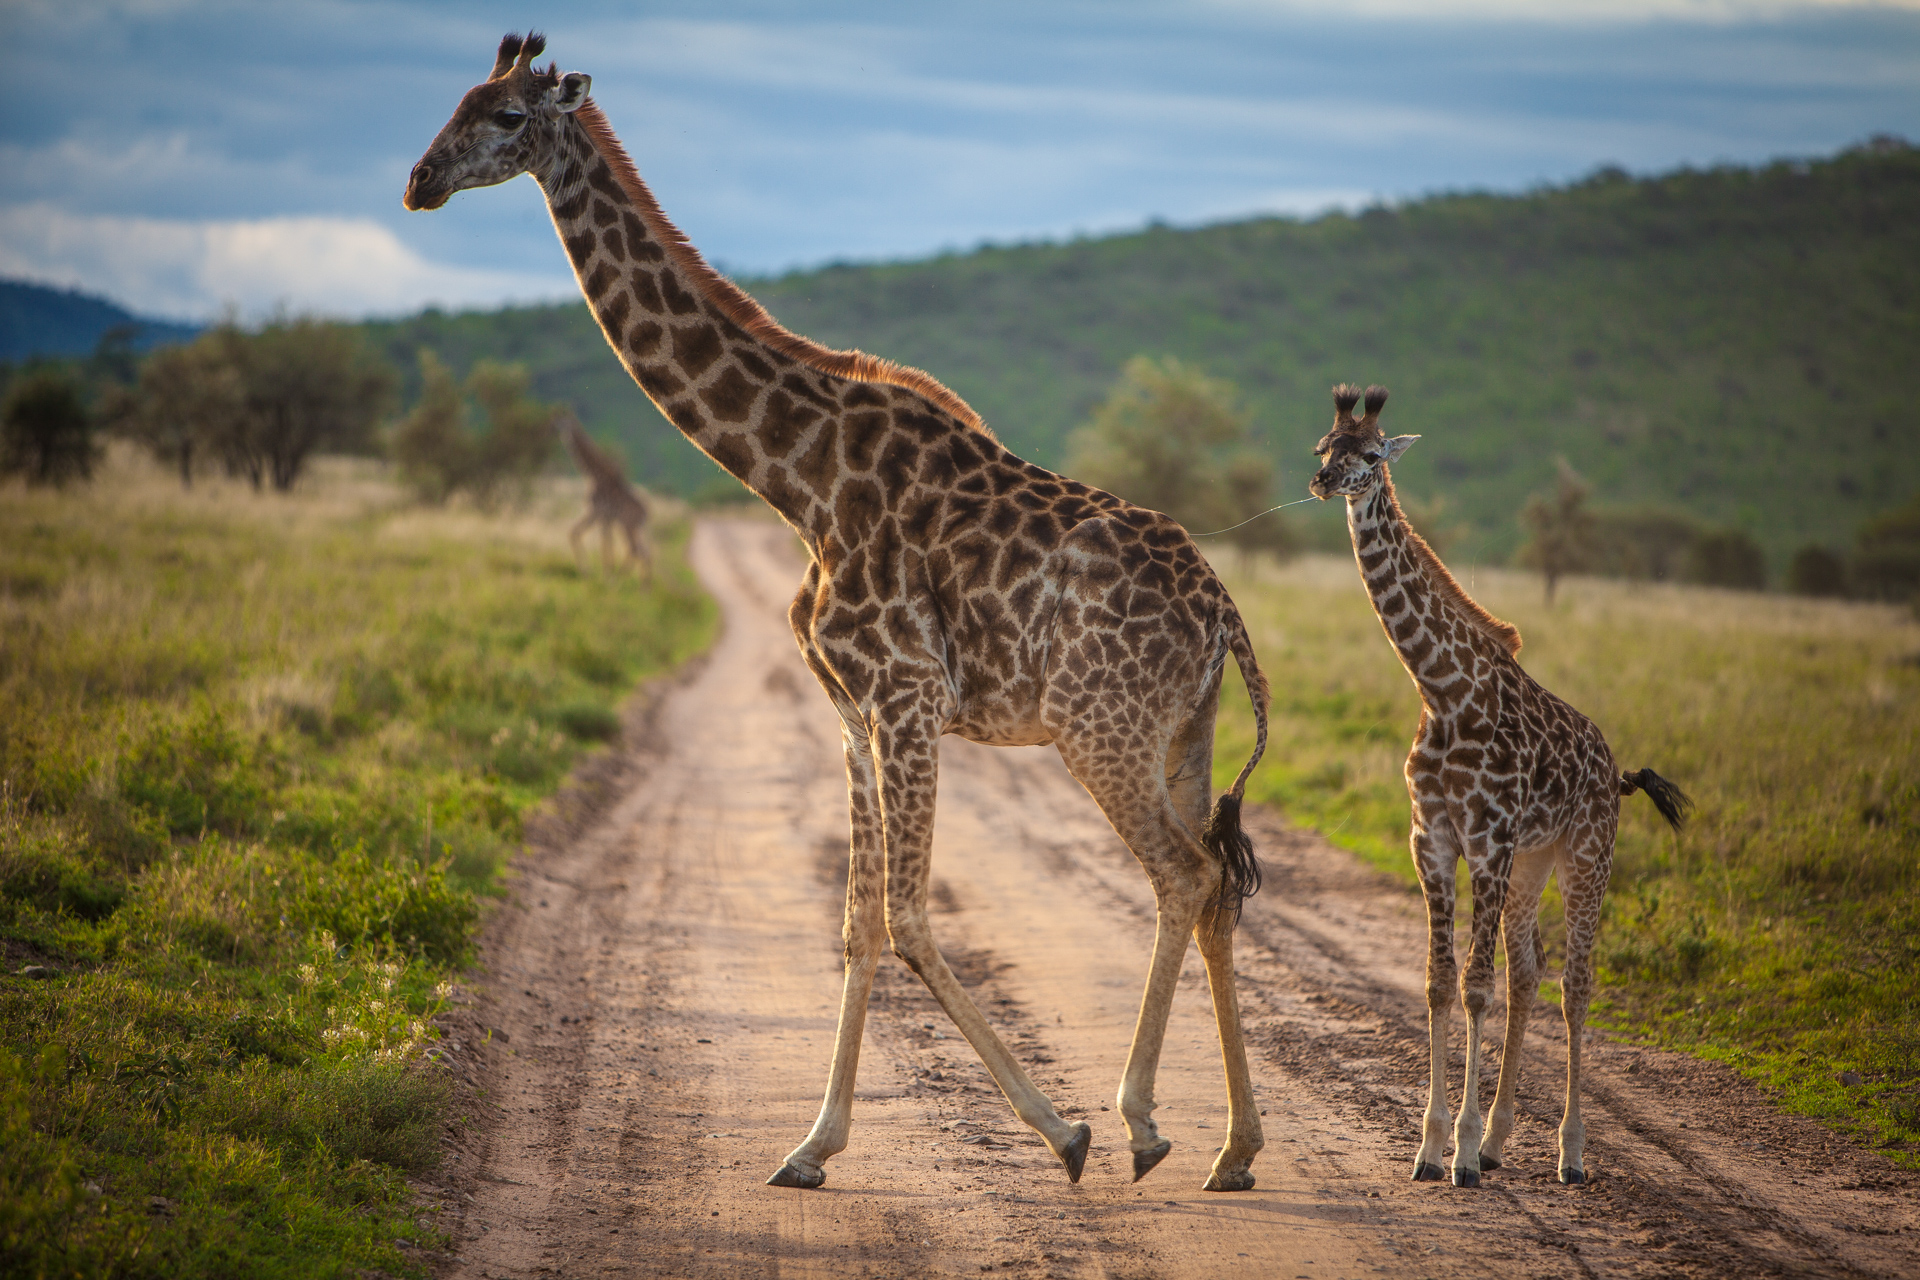 A mother giraffe leading calf across a dirt road.